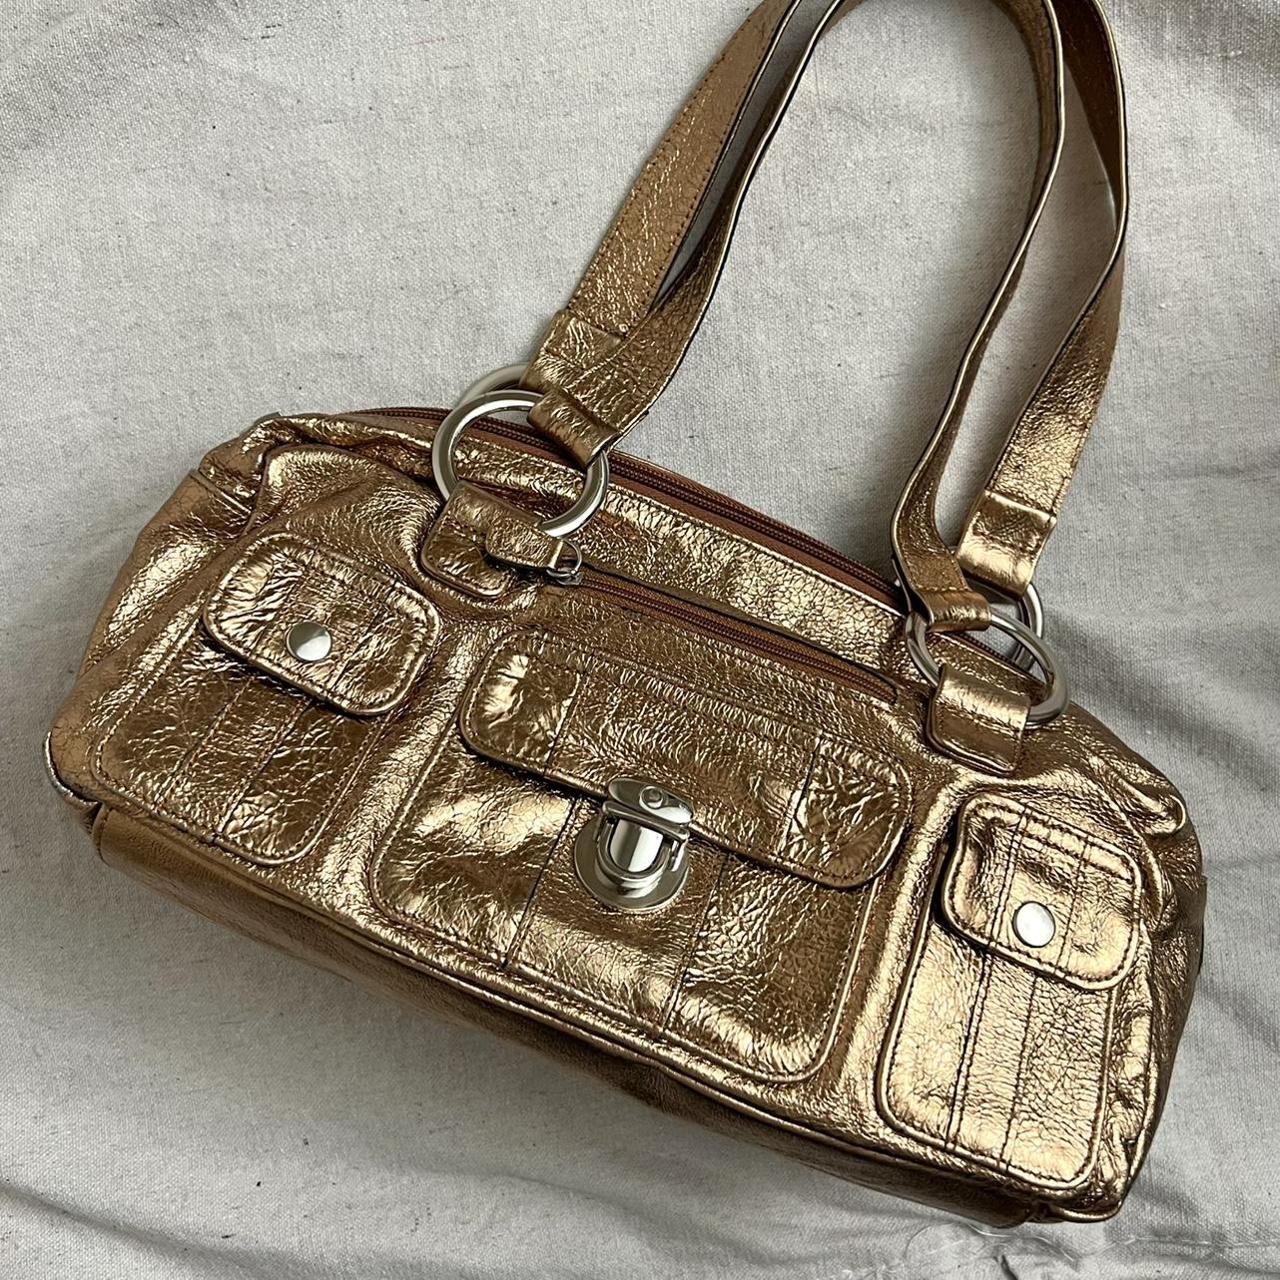 Ralph Lauren bag. vintage gold silver metallic - Depop